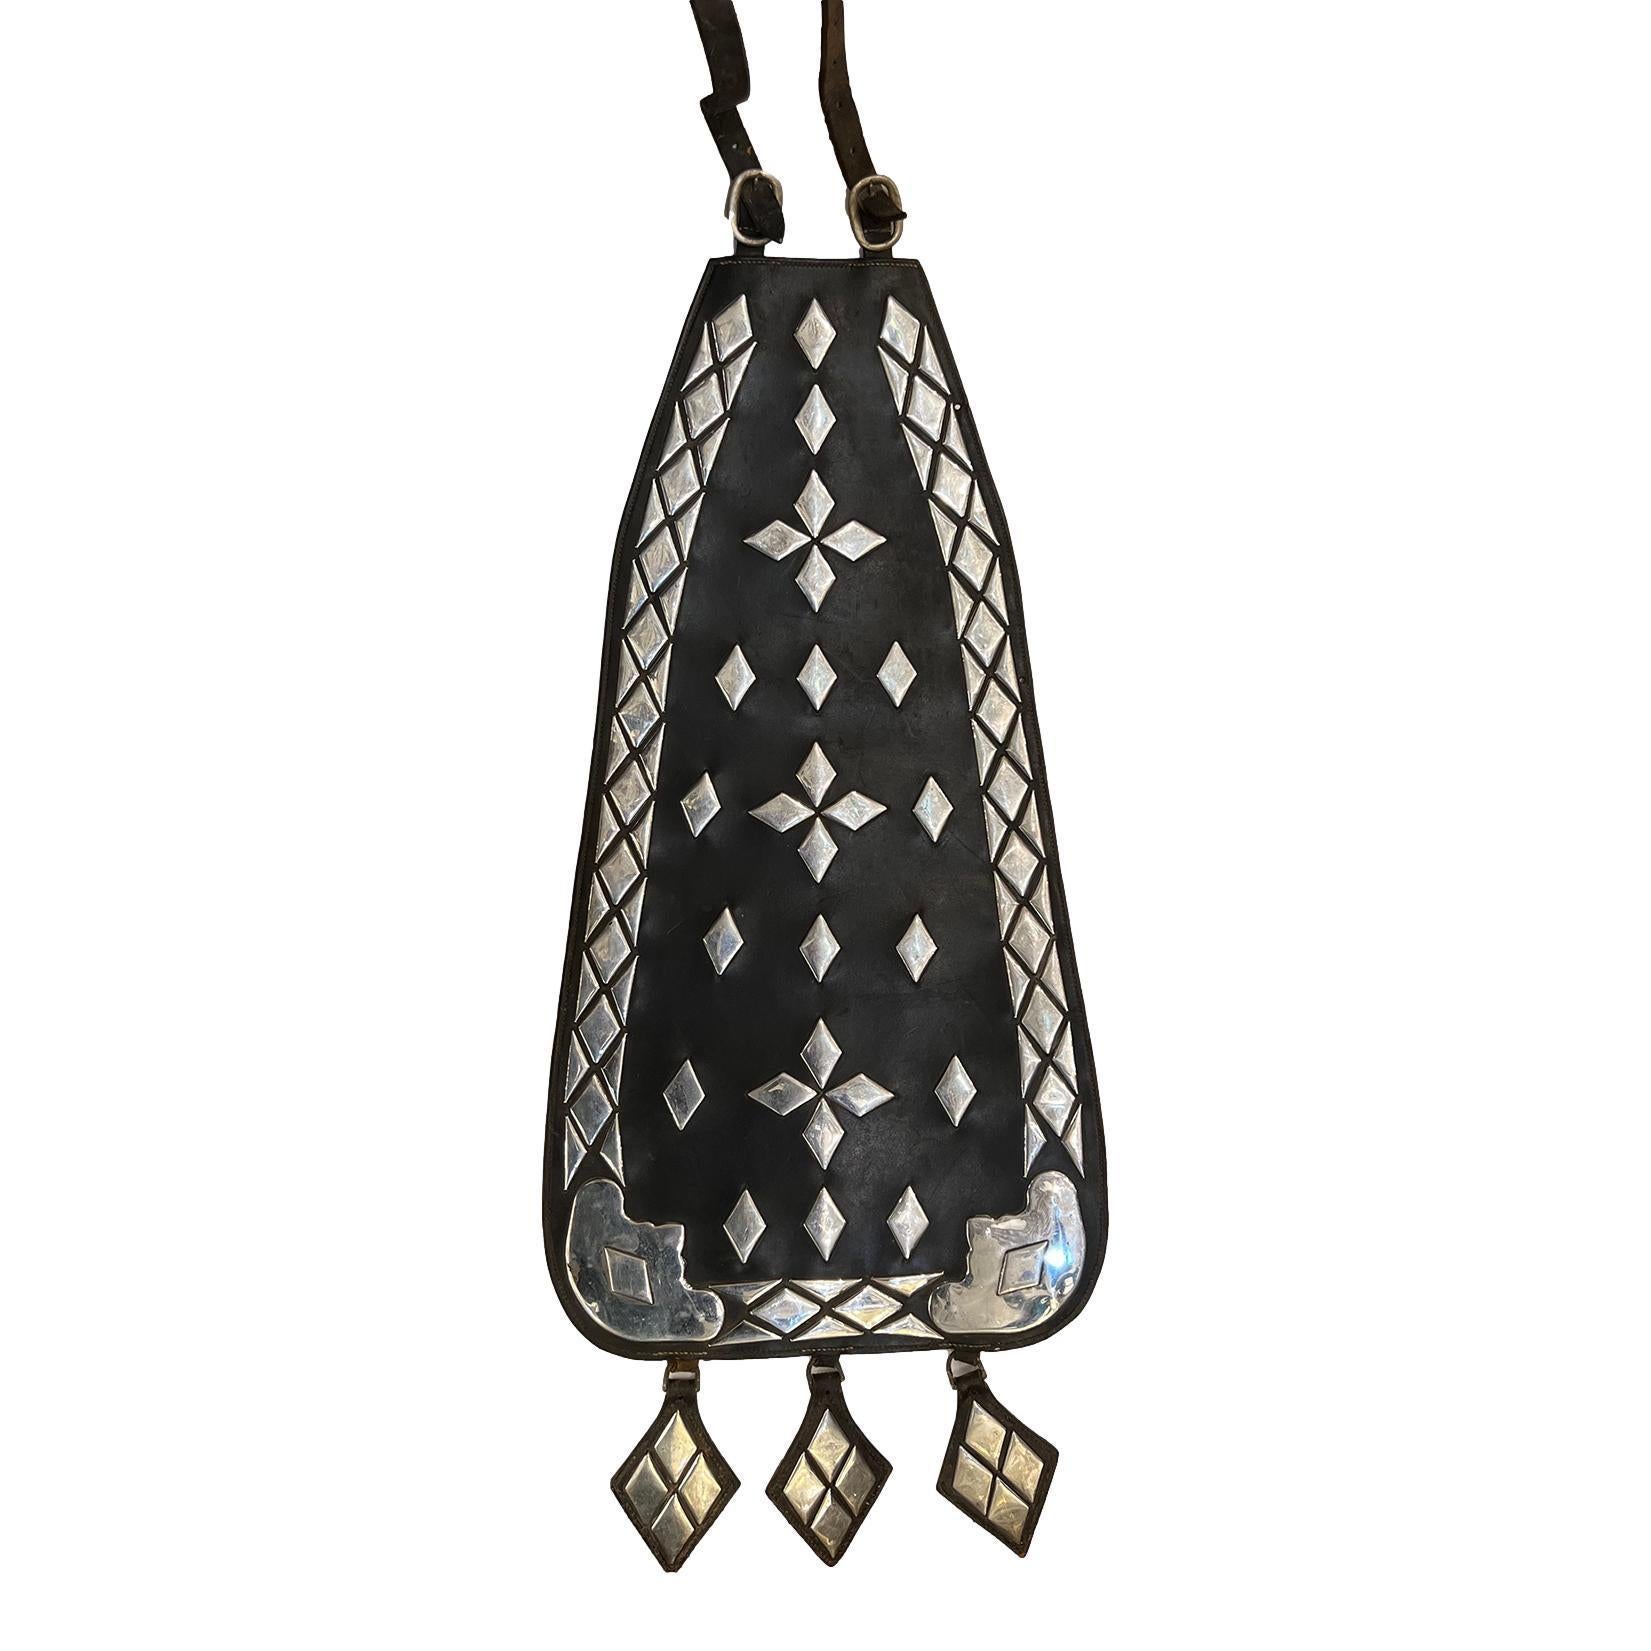 Une décoration de selle espagnole des années 1950 en cuir et détails nickelés.

Mesures :
Longueur : 60.5″
largeur : 15.75″